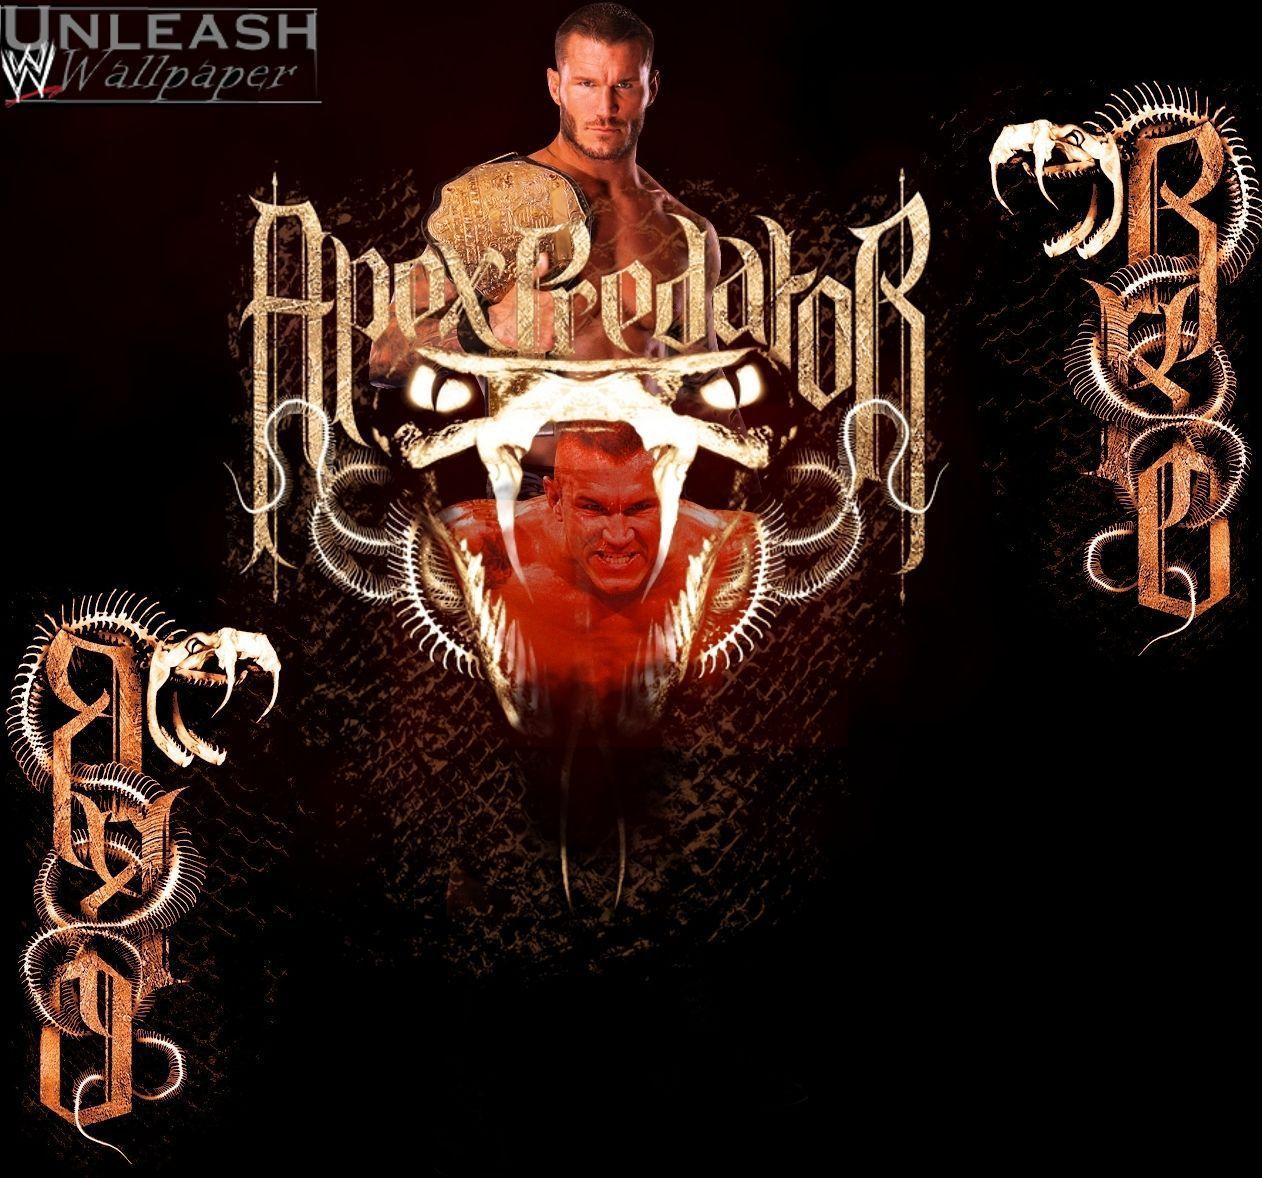 Randy Orton Logo Wallpaper